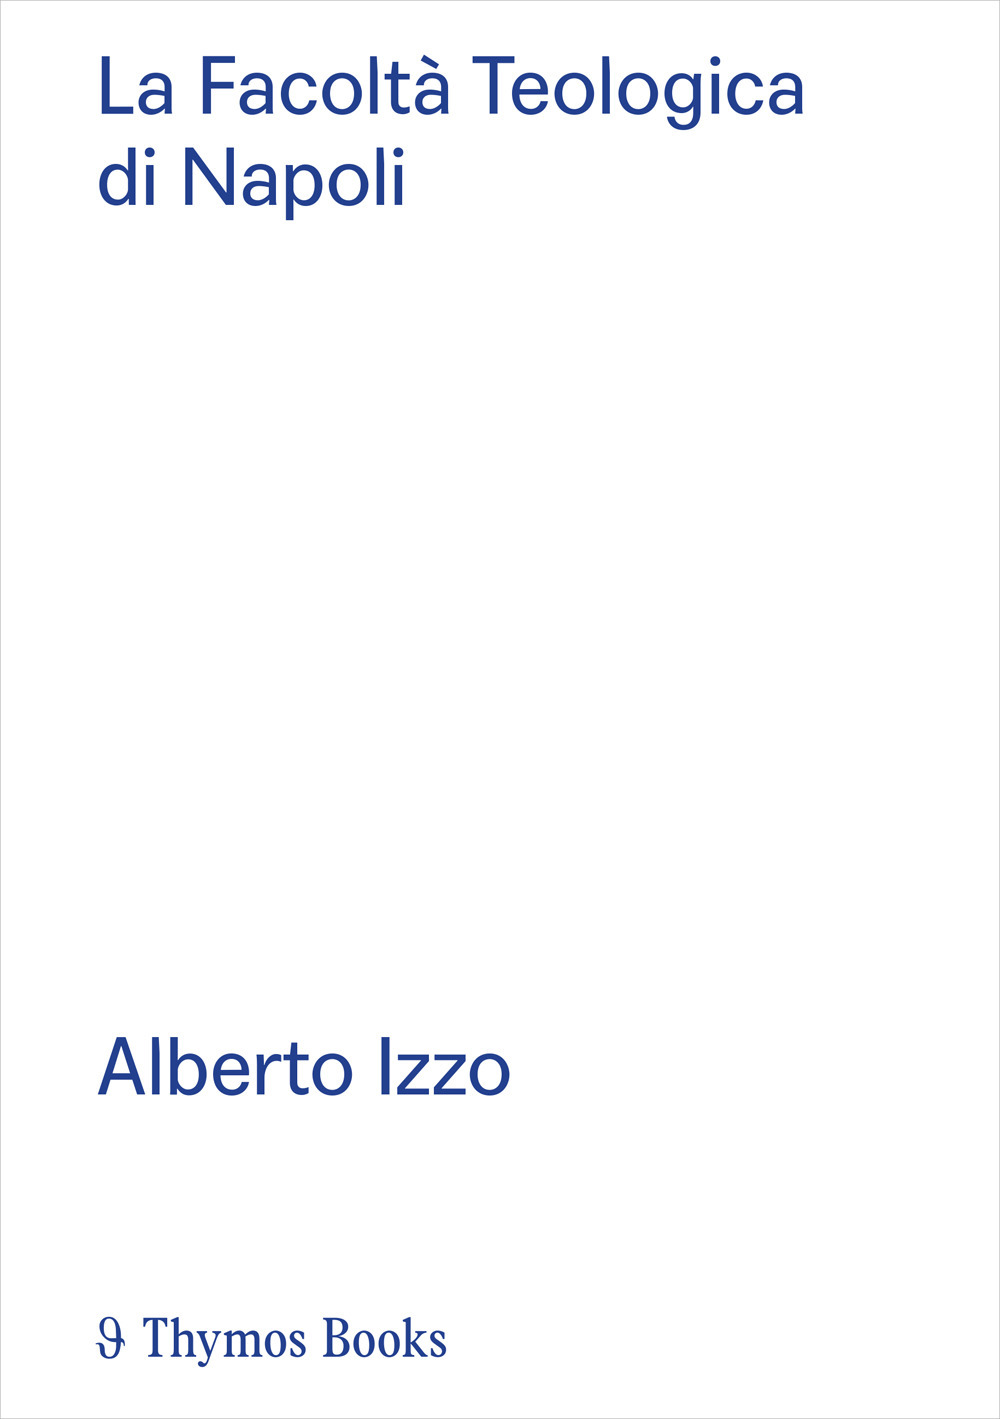 La Facoltà Teologica di Napoli. Alberto Izzo. Ediz. italiana e inglese